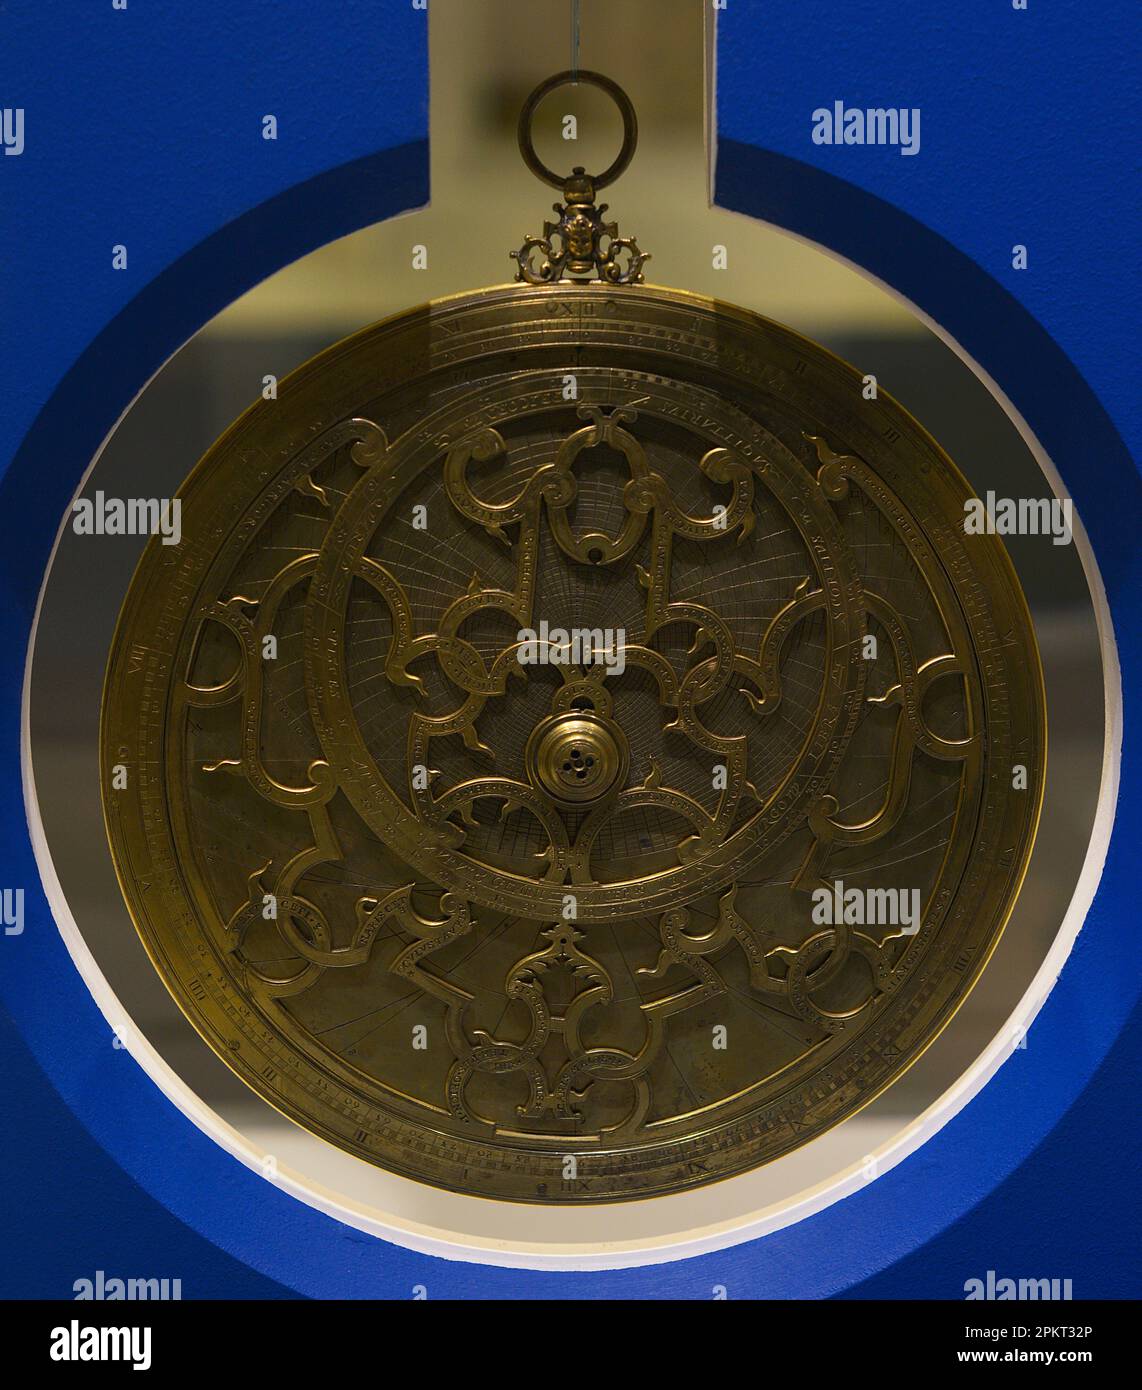 Astrolabe planisphérique. Instrument astronomique d'origine française, fabriqué par Nicol Patenal. En date du 1616. Musée maritime. Lisbonne, Portugal. Auteur: Nicol Patenal. 17th siècle. Banque D'Images